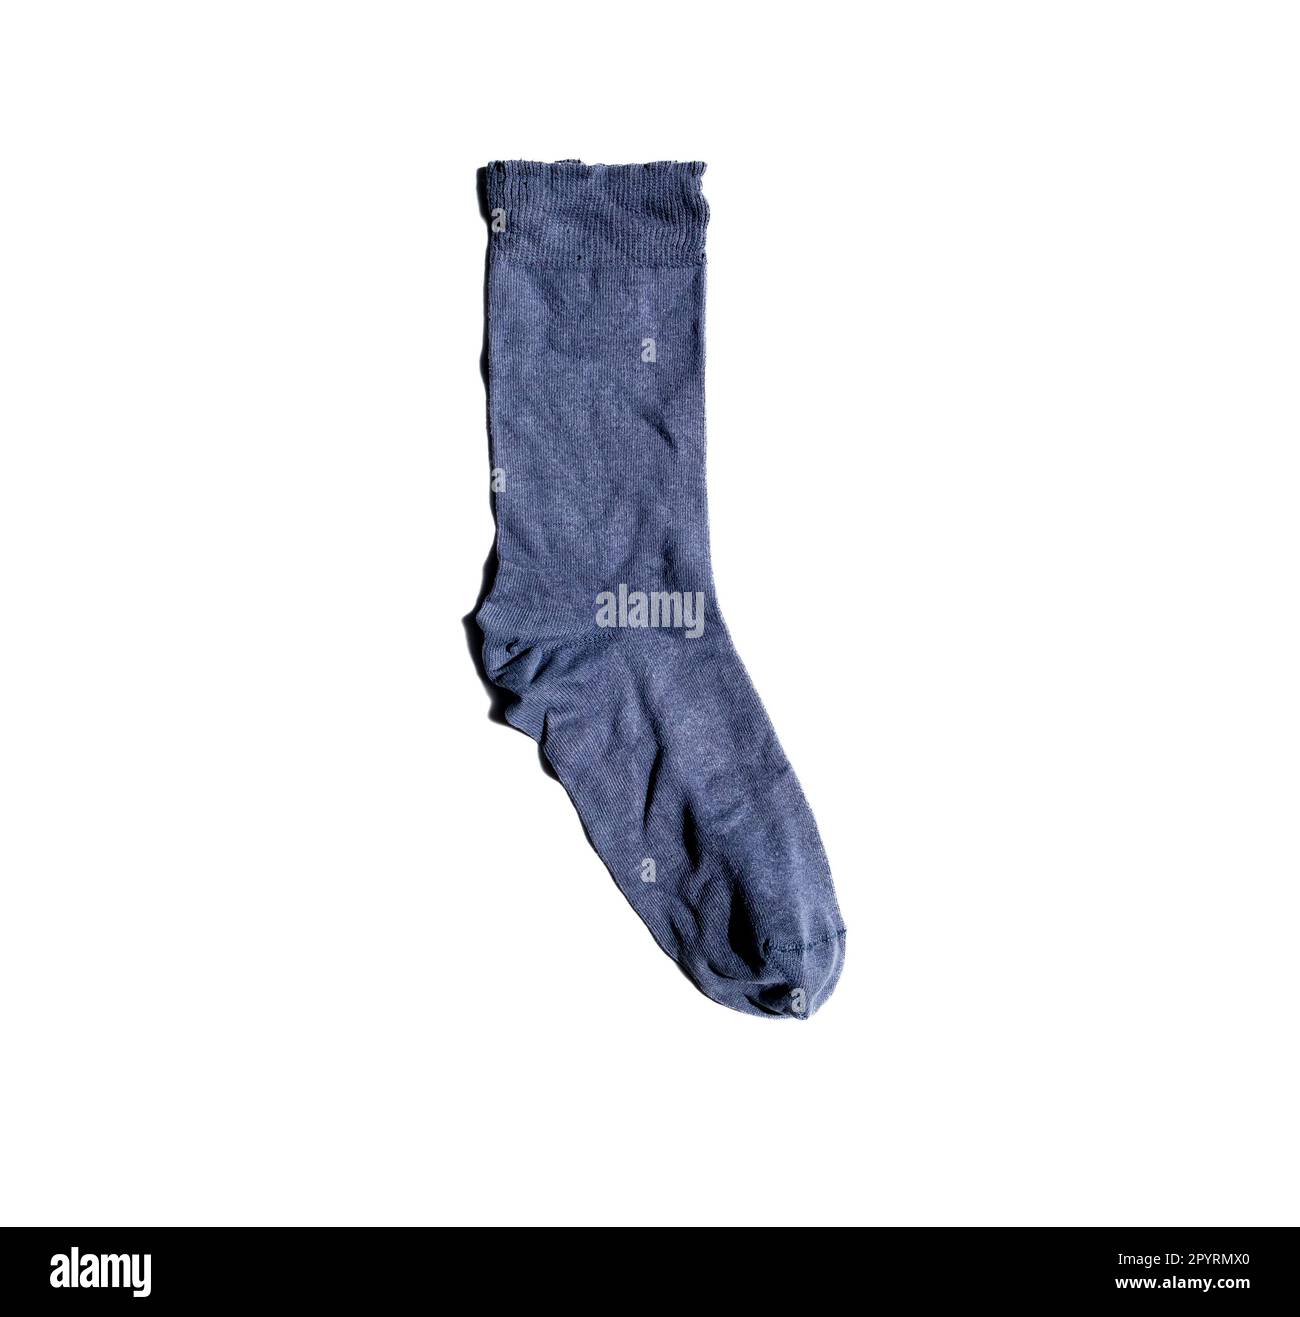 Crumpled socks isolated on white background Stock Photo - Alamy